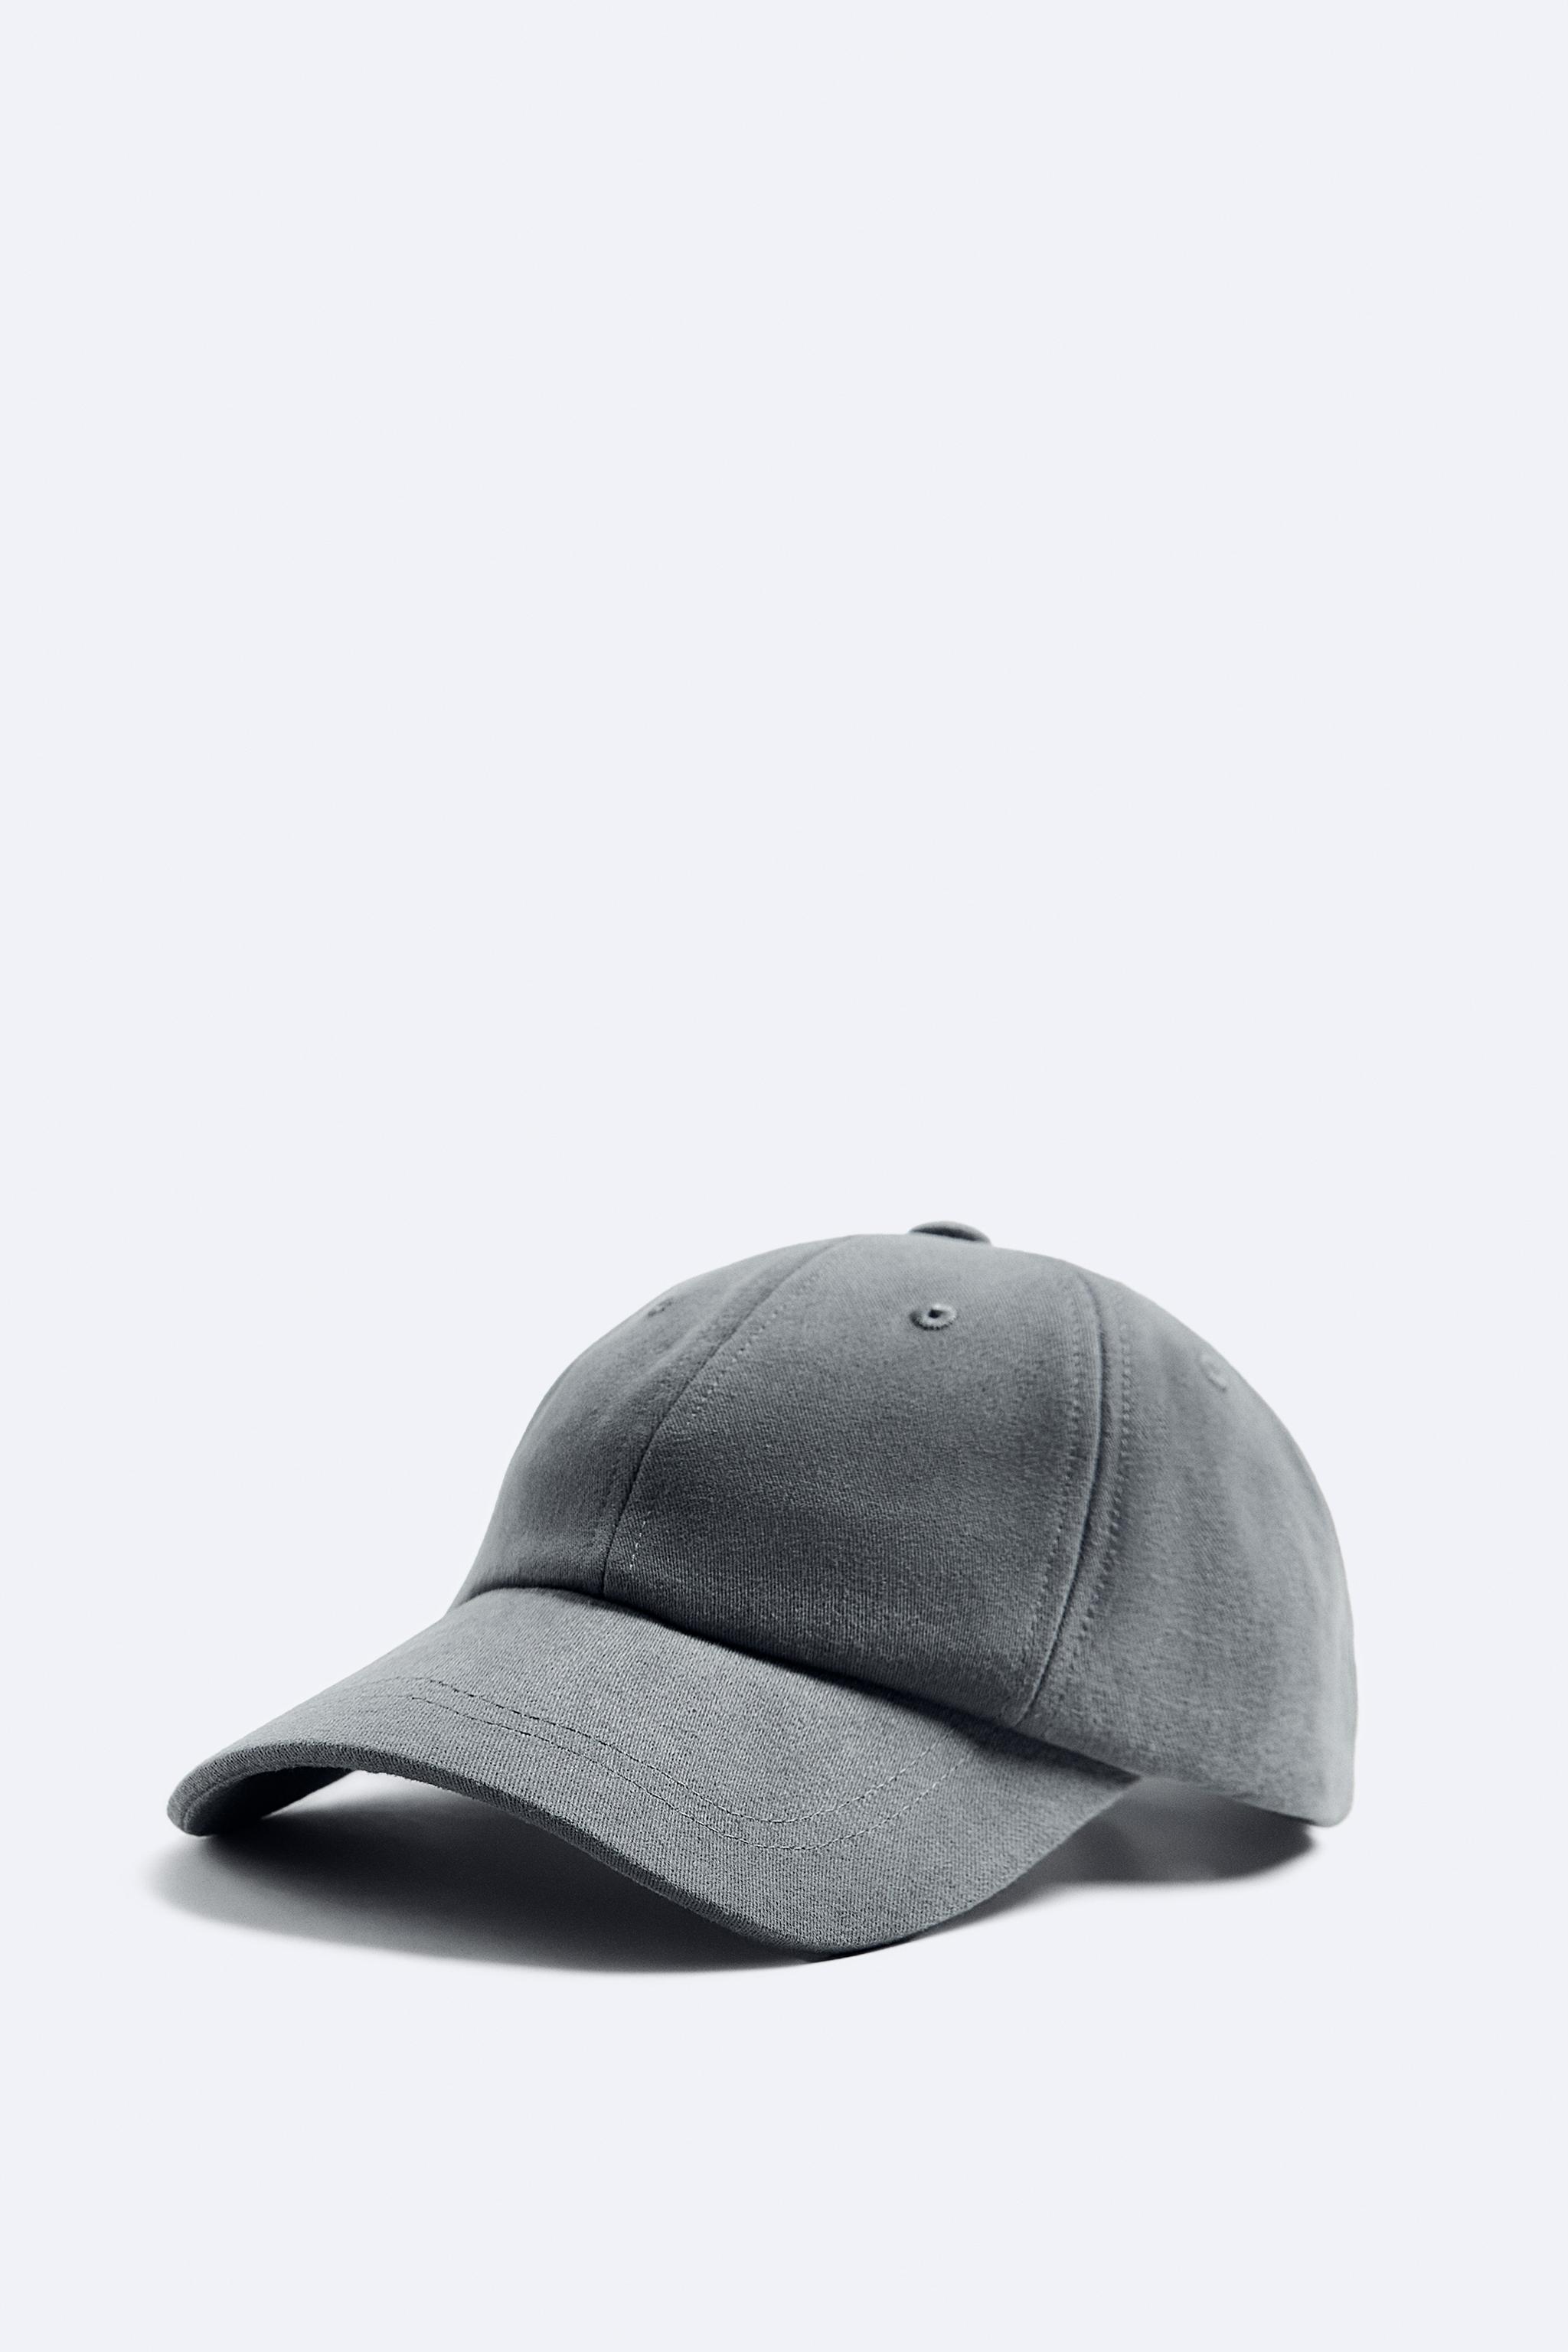 帽子 & キャップ | メンズ | 最新コレクション | ZARA 日本